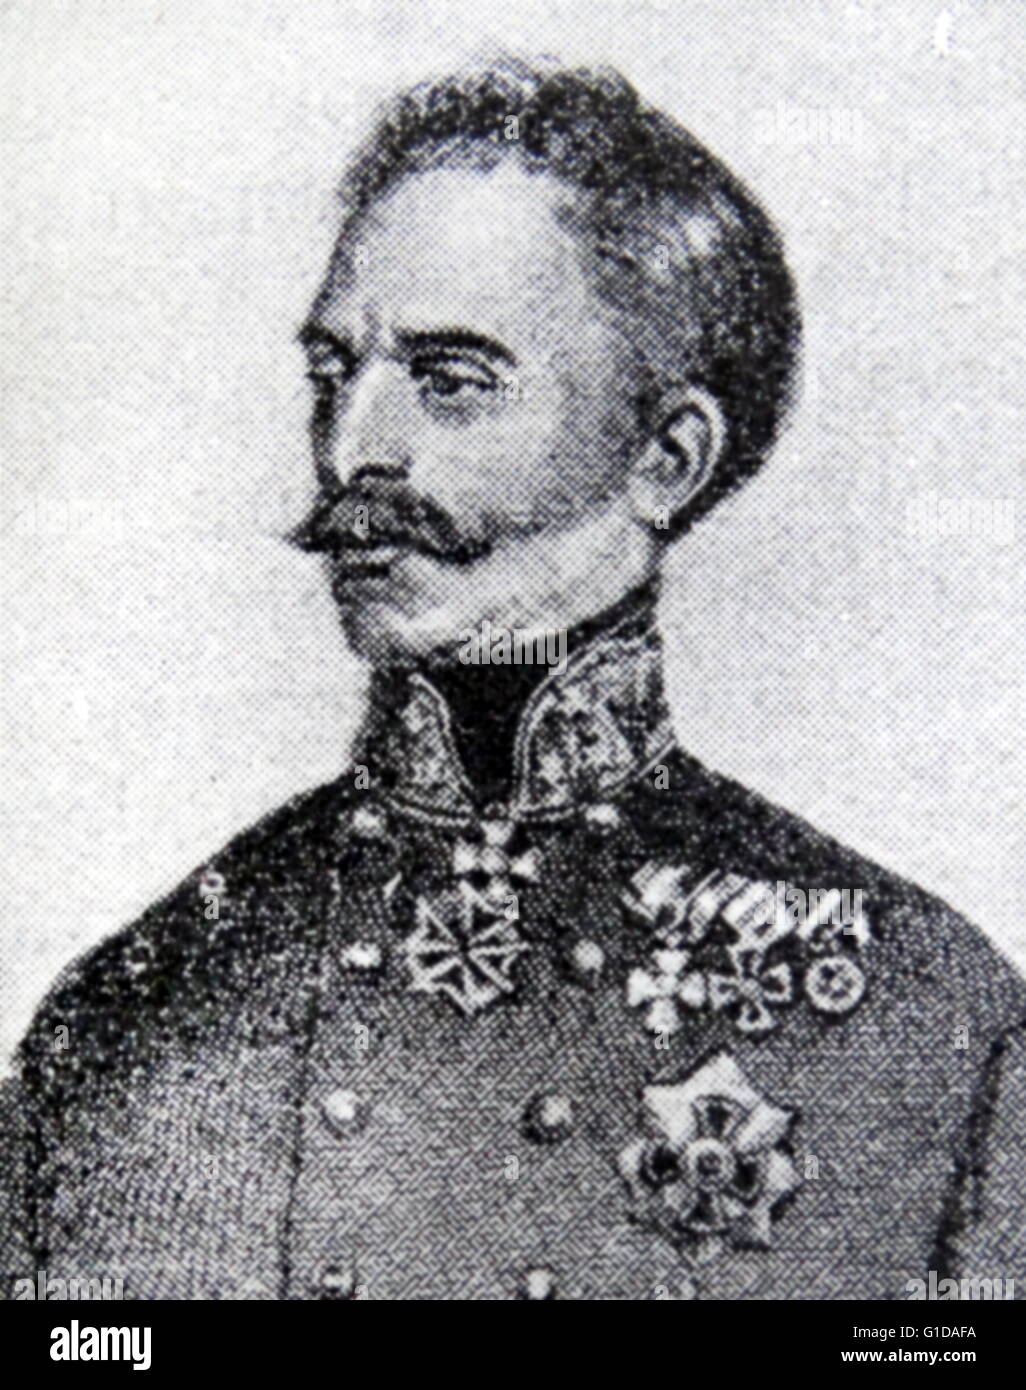 General Heinriche von Hess (1788-1870). Austrian soldier and senior commander under General Radetzky. Stock Photo